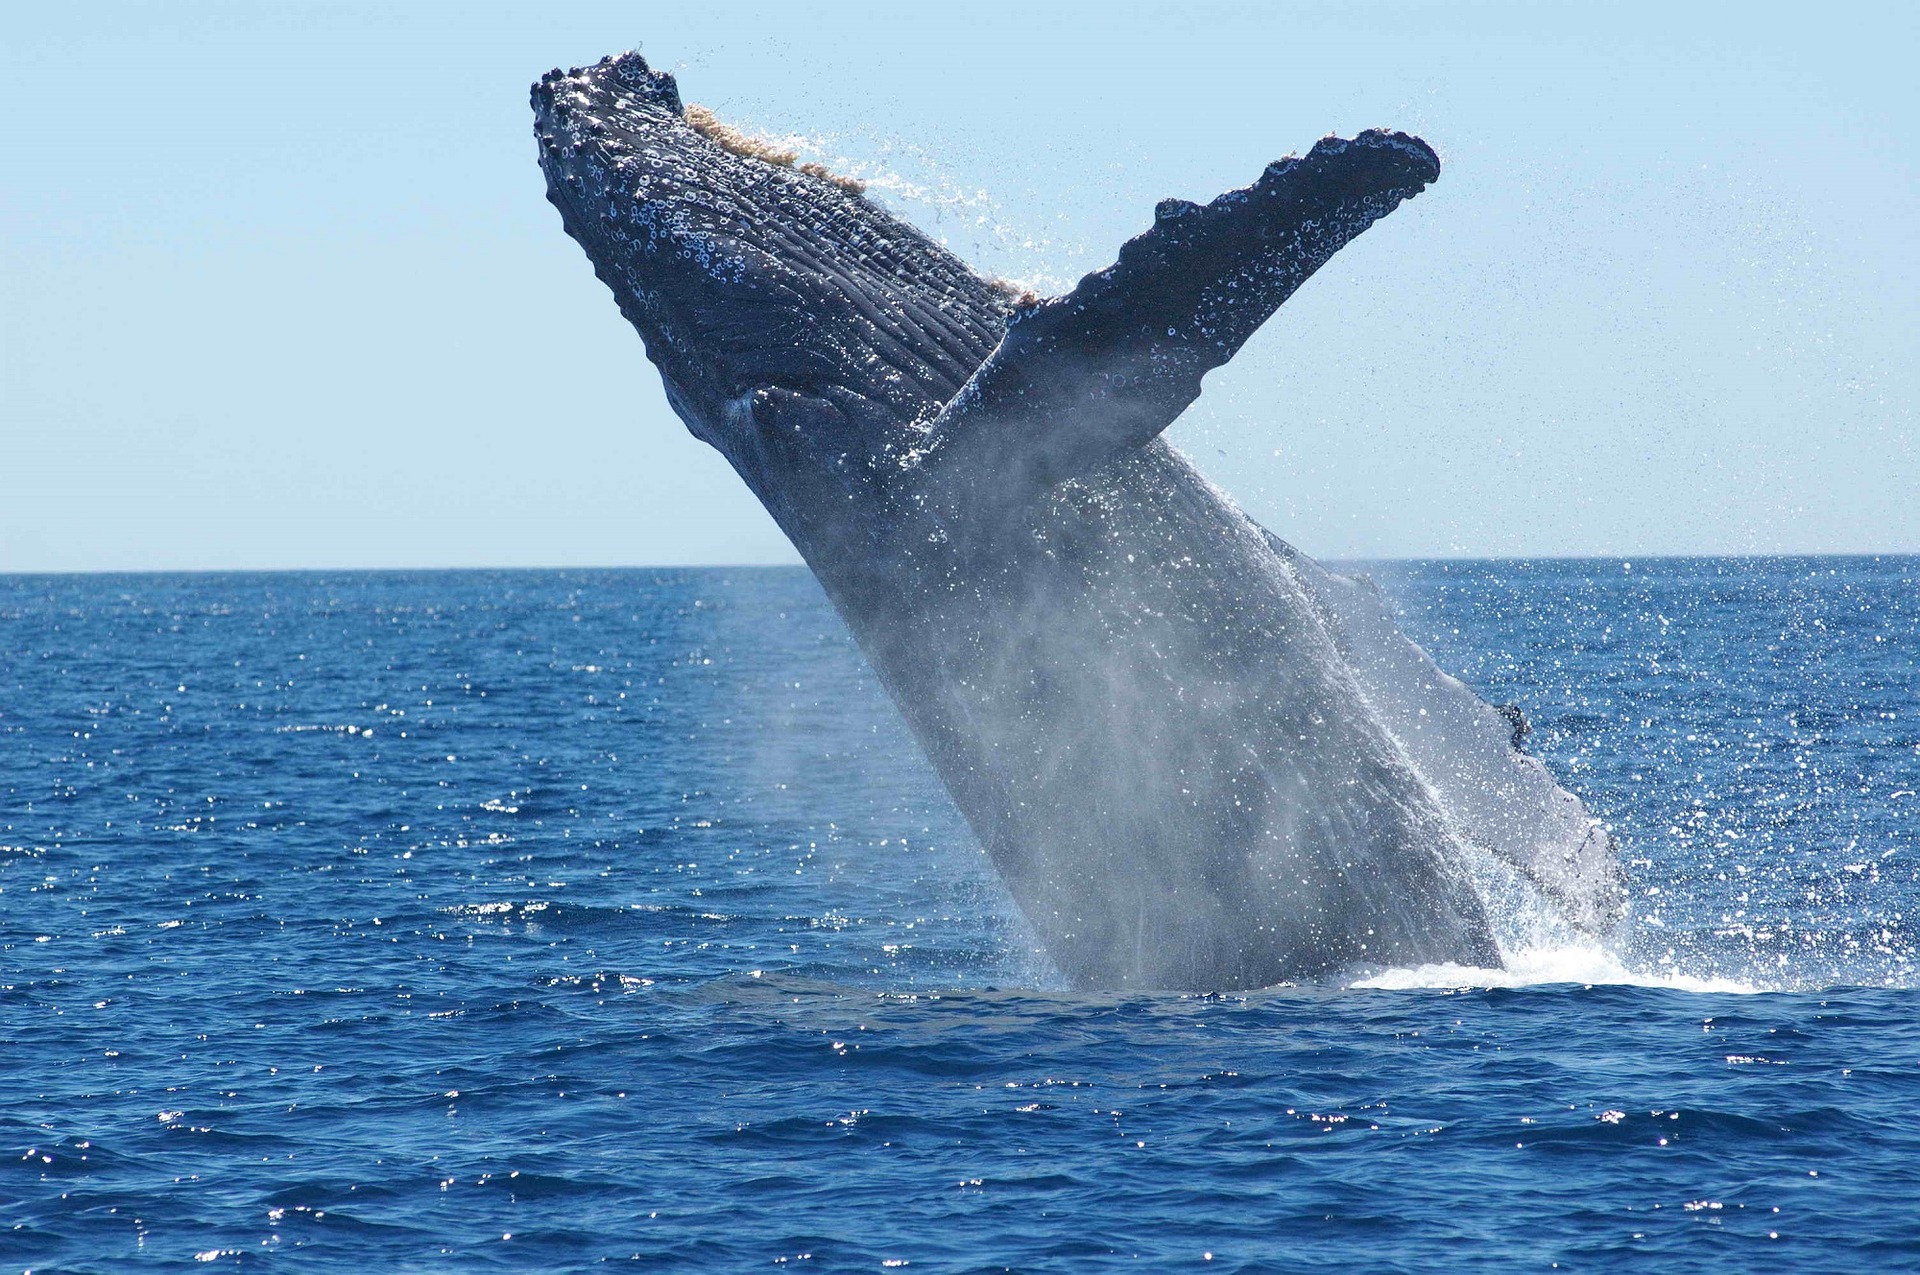 Descubra la majestuosidad de la vida marina con el inicio de la temporada de avistamiento de ballenas desde Quepos